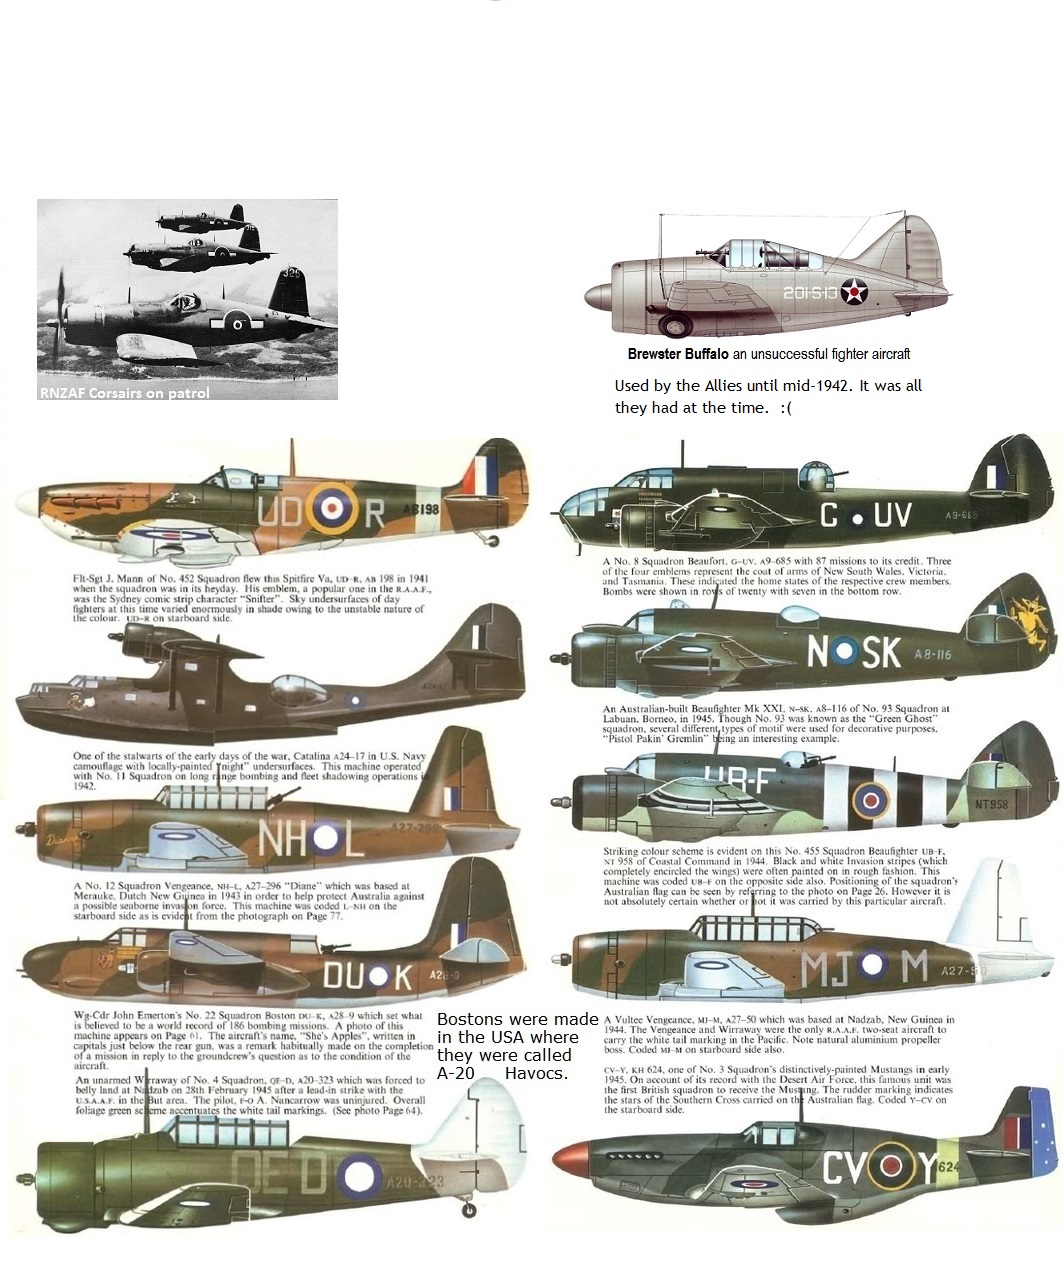 RAAF aircraft